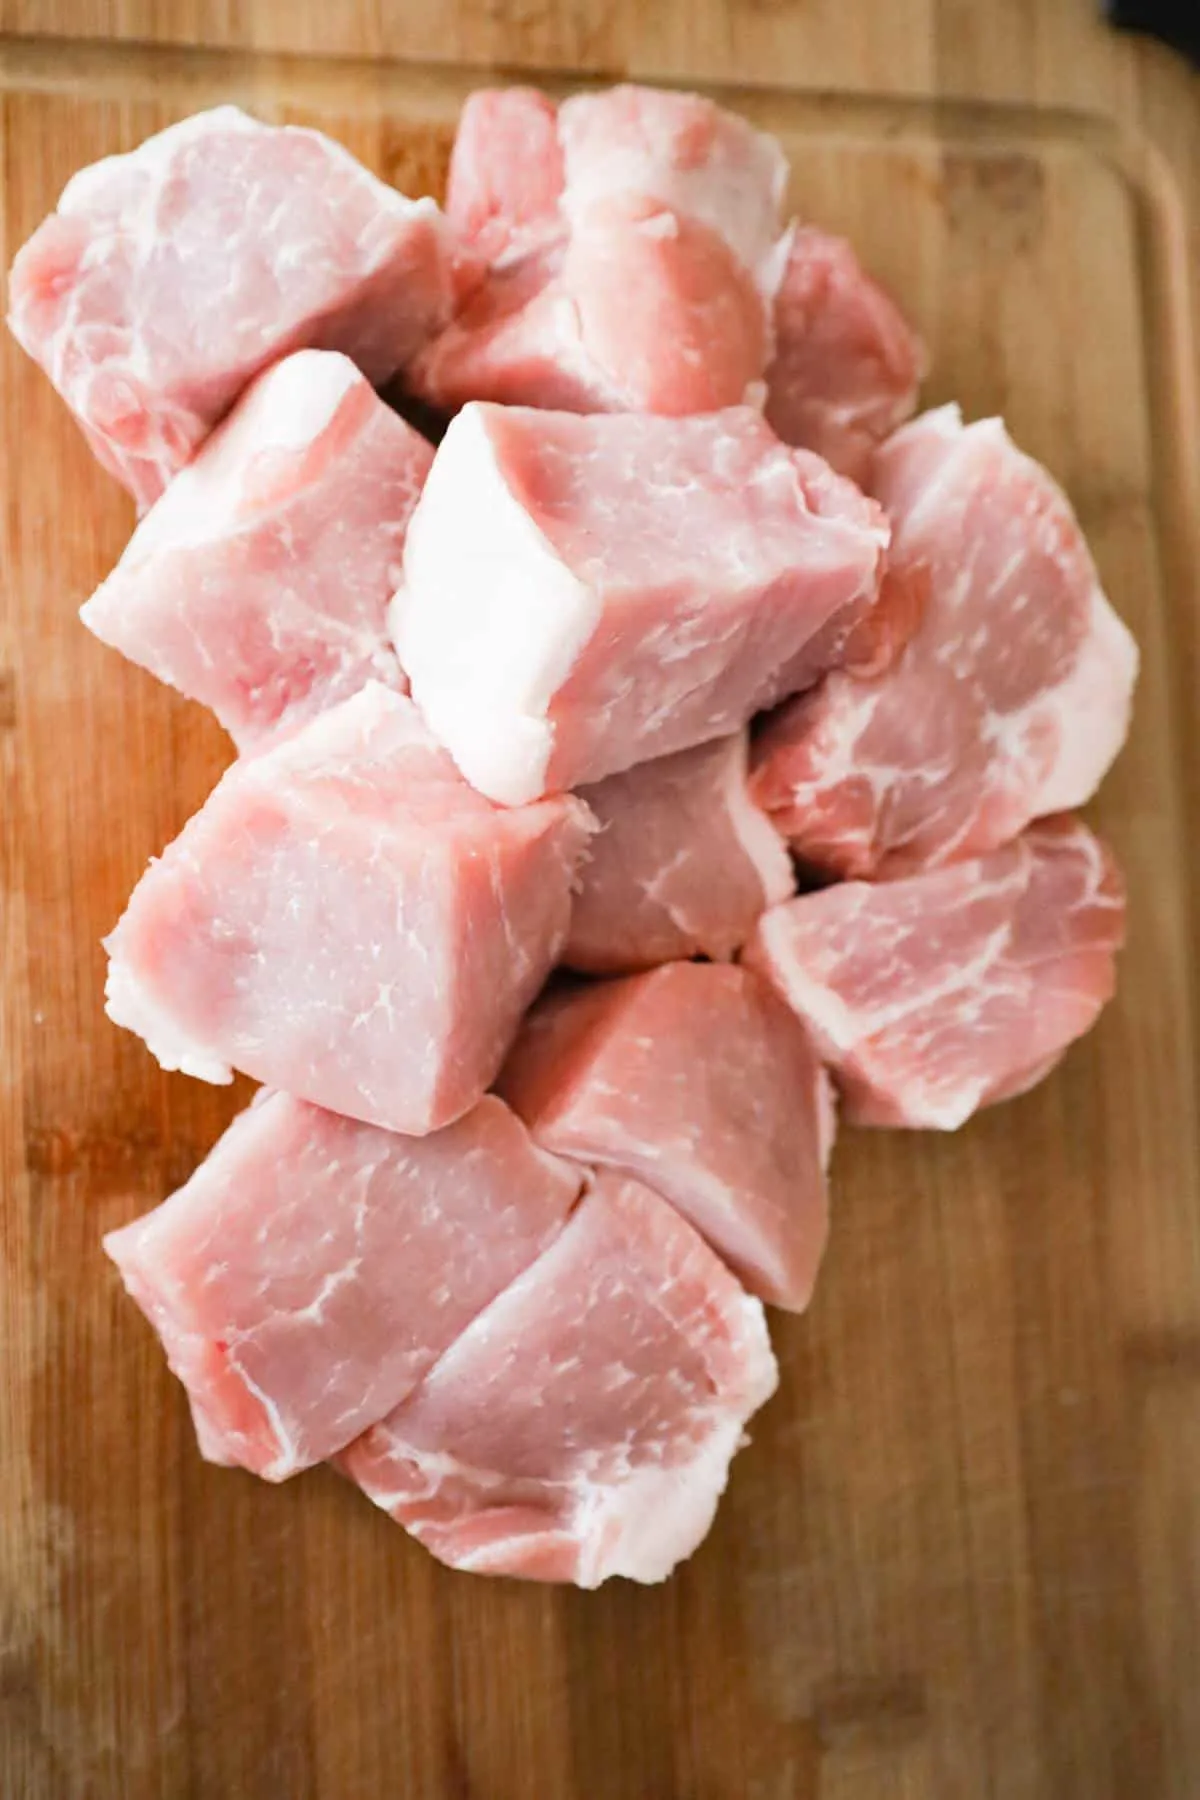 raw pork roast chunks of a cutting board